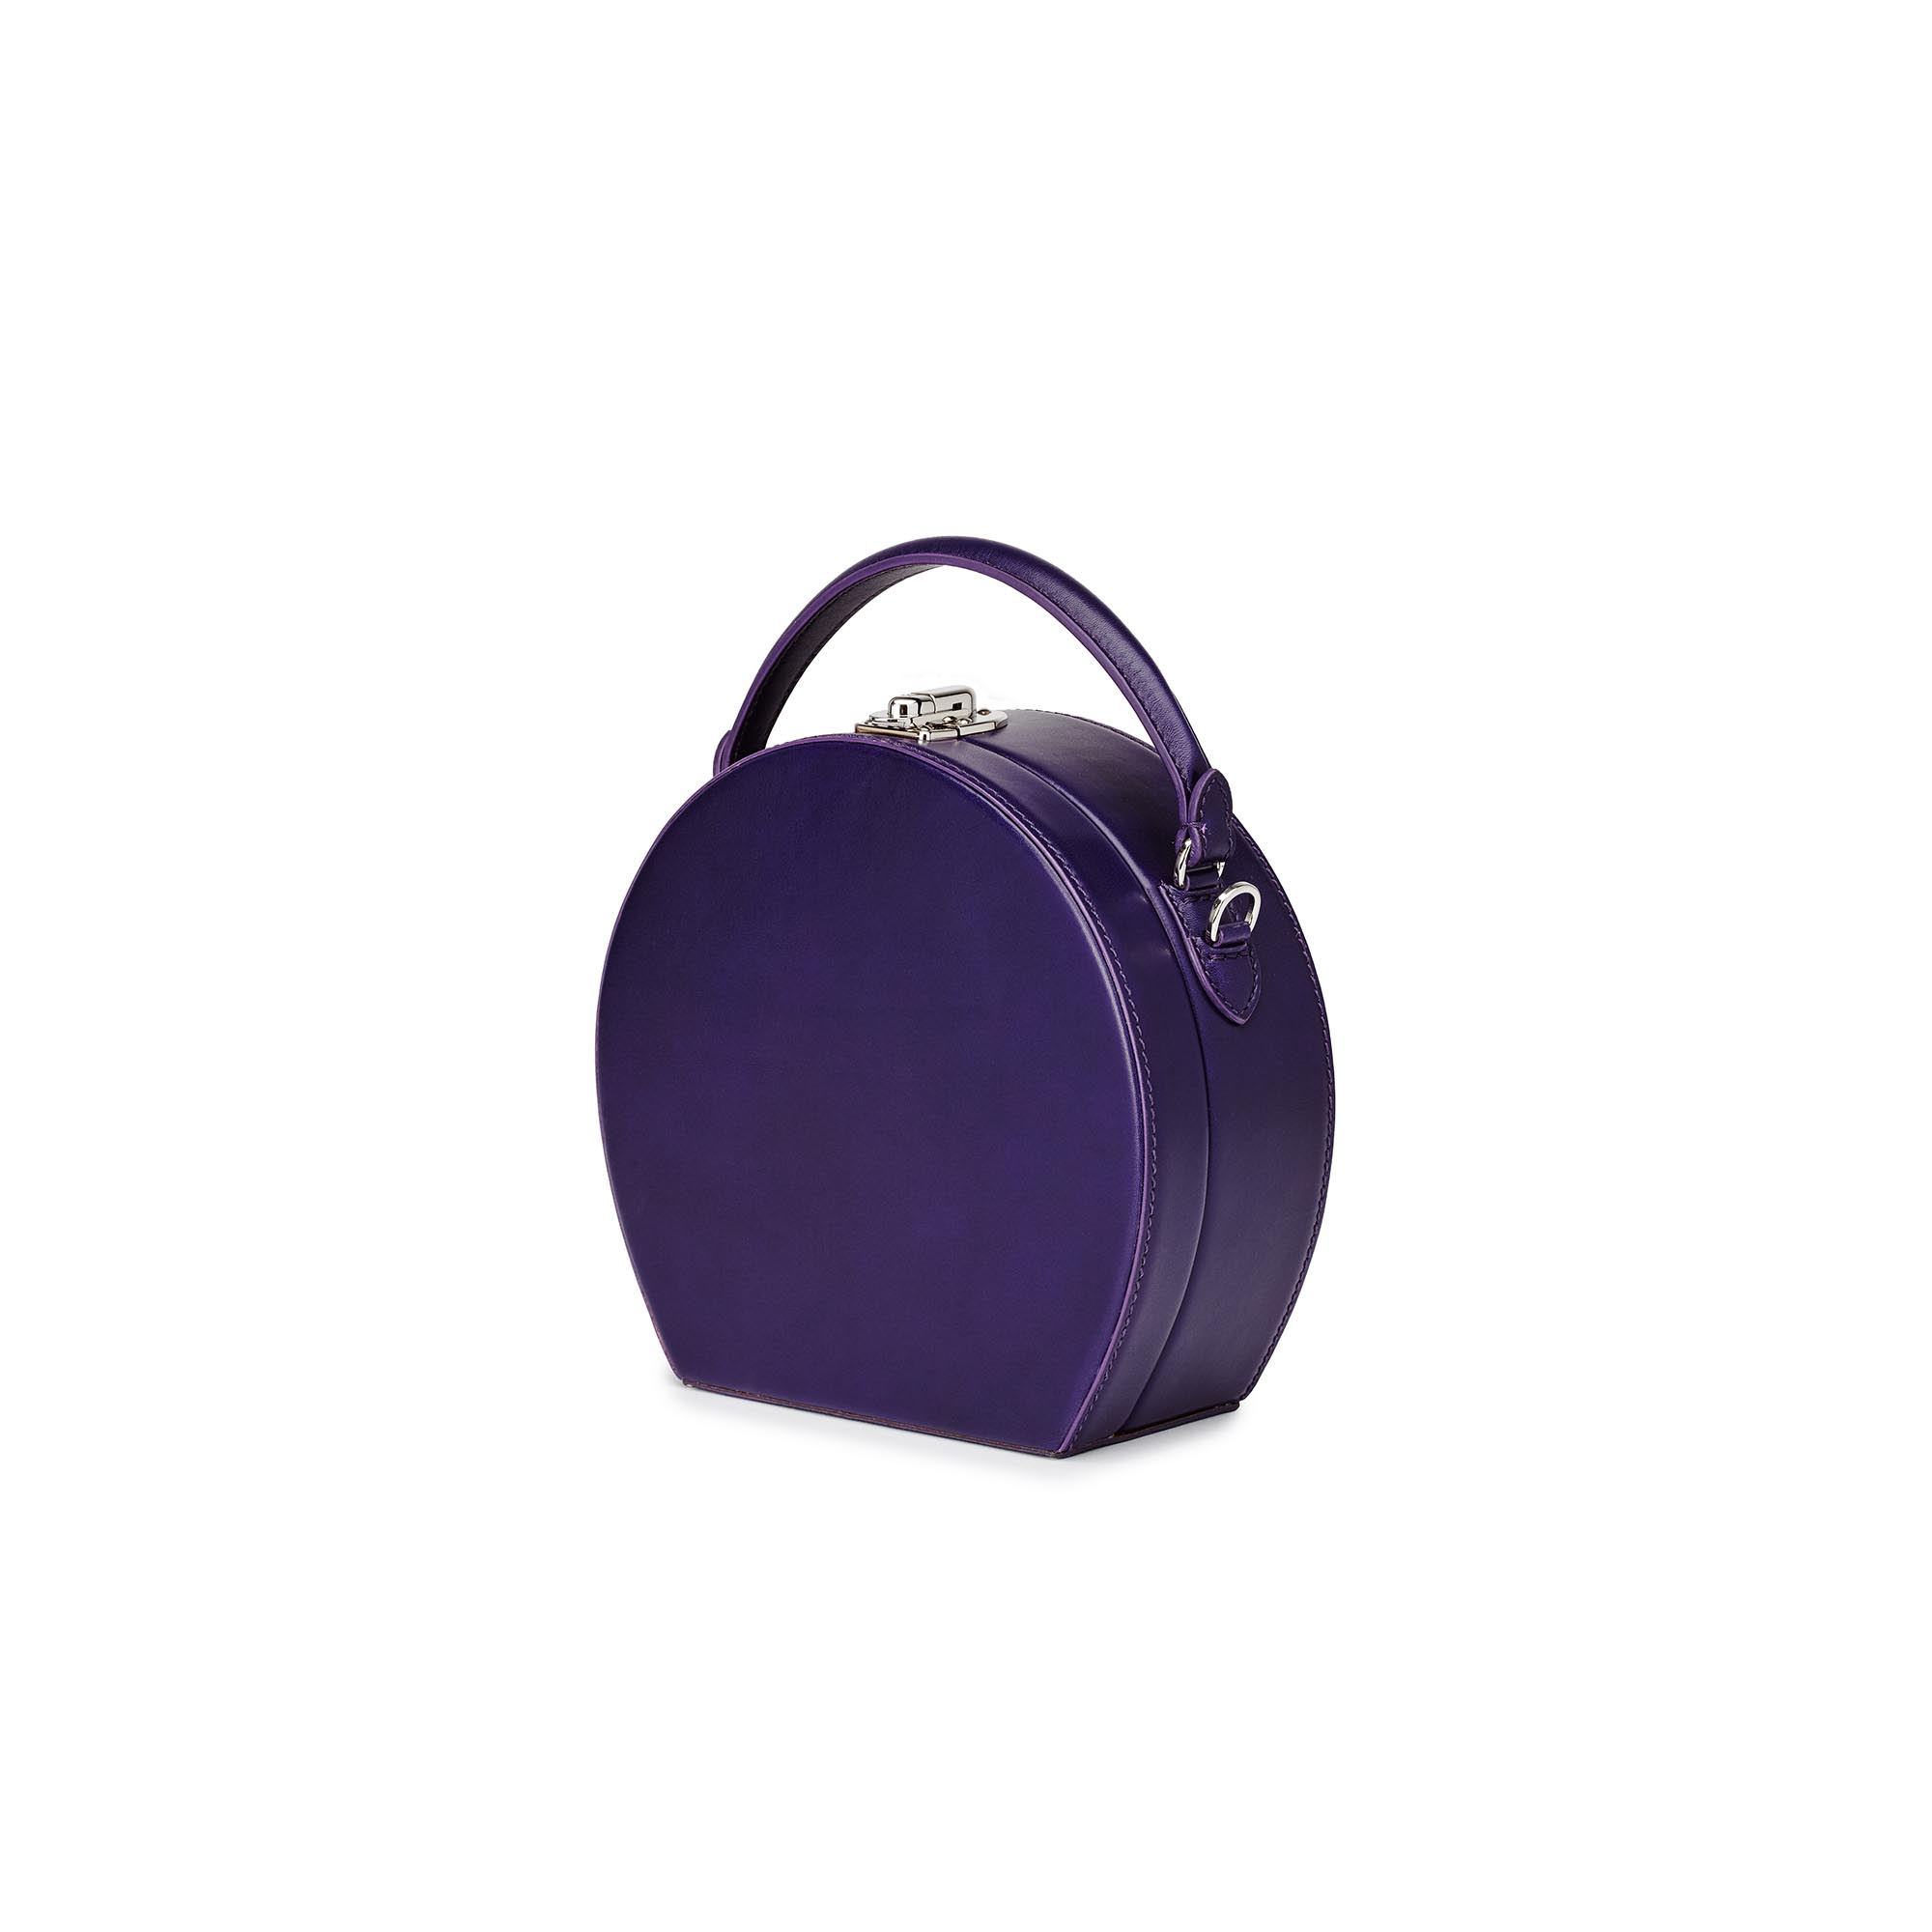 Regular-Bertoncina-purple-french-calf-bag-Beroni-1949_02